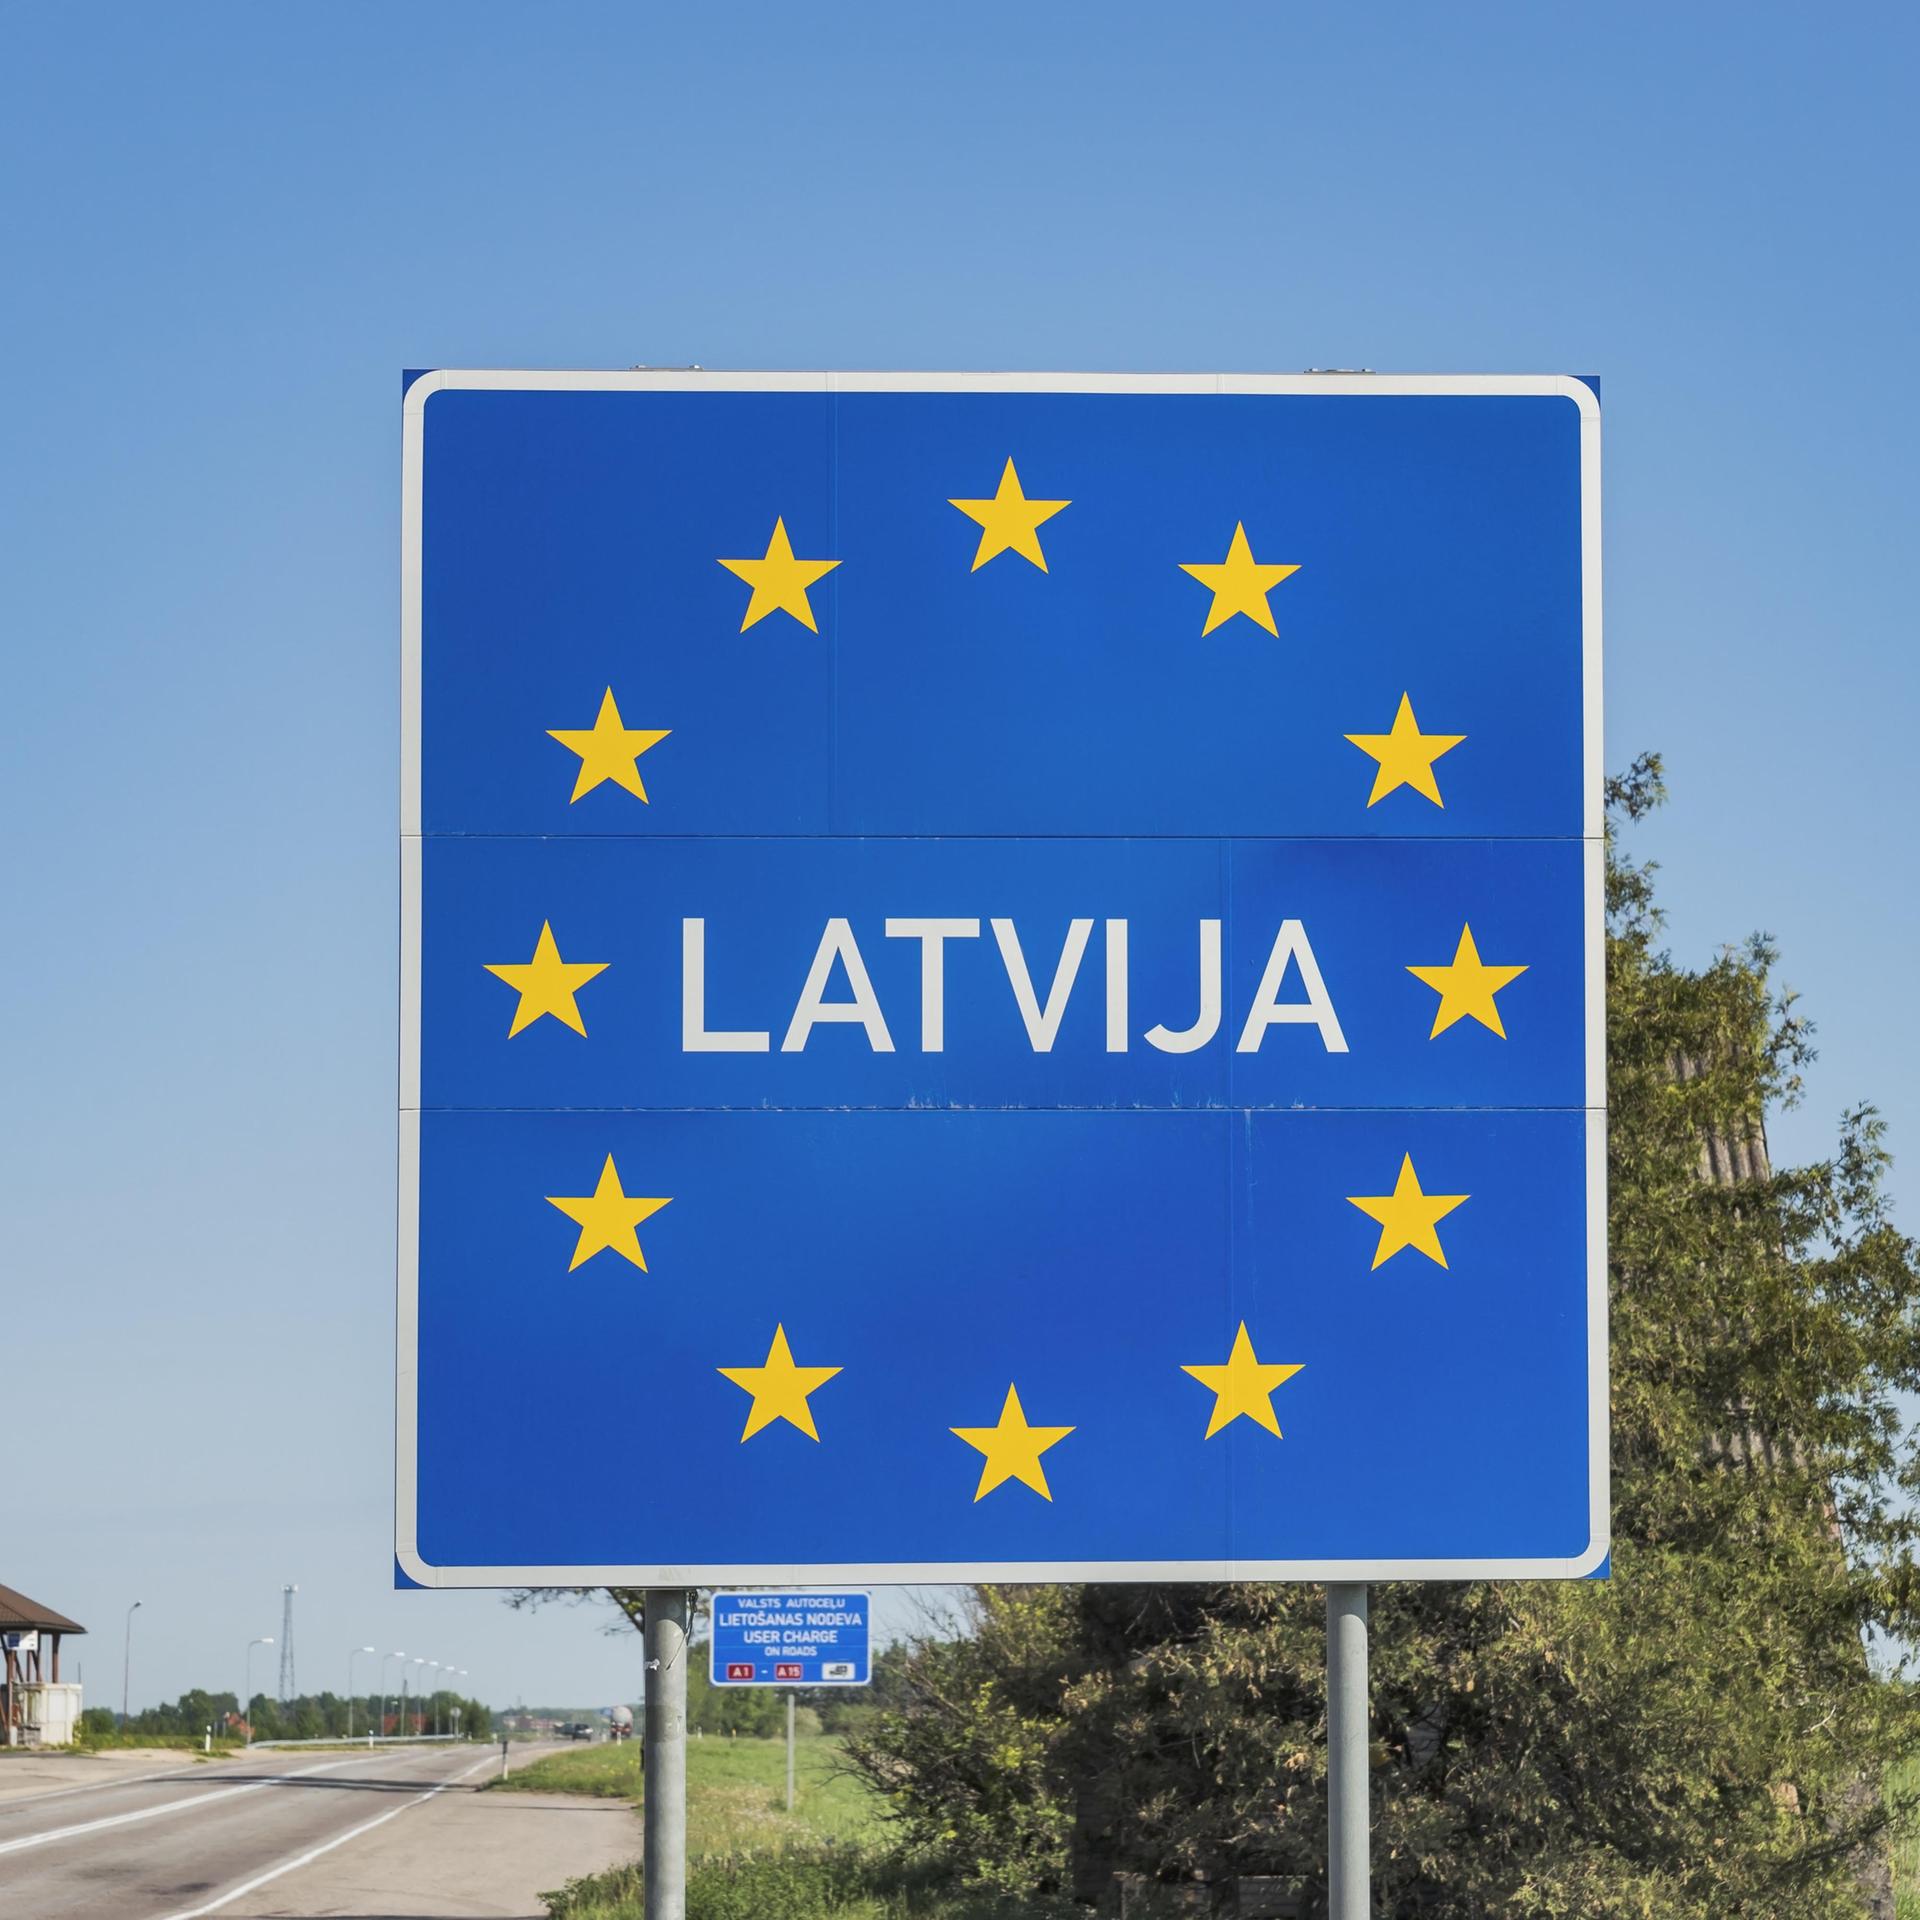 Das große blaue Schild mit der Aufschrift "Latvija" und dem europäischen Sternenkreis nimmt den Großteil des Bildes ein. Am unteren Rand der Grenzübergang mit einem Gebäude, dahinter blauer Himmel. 